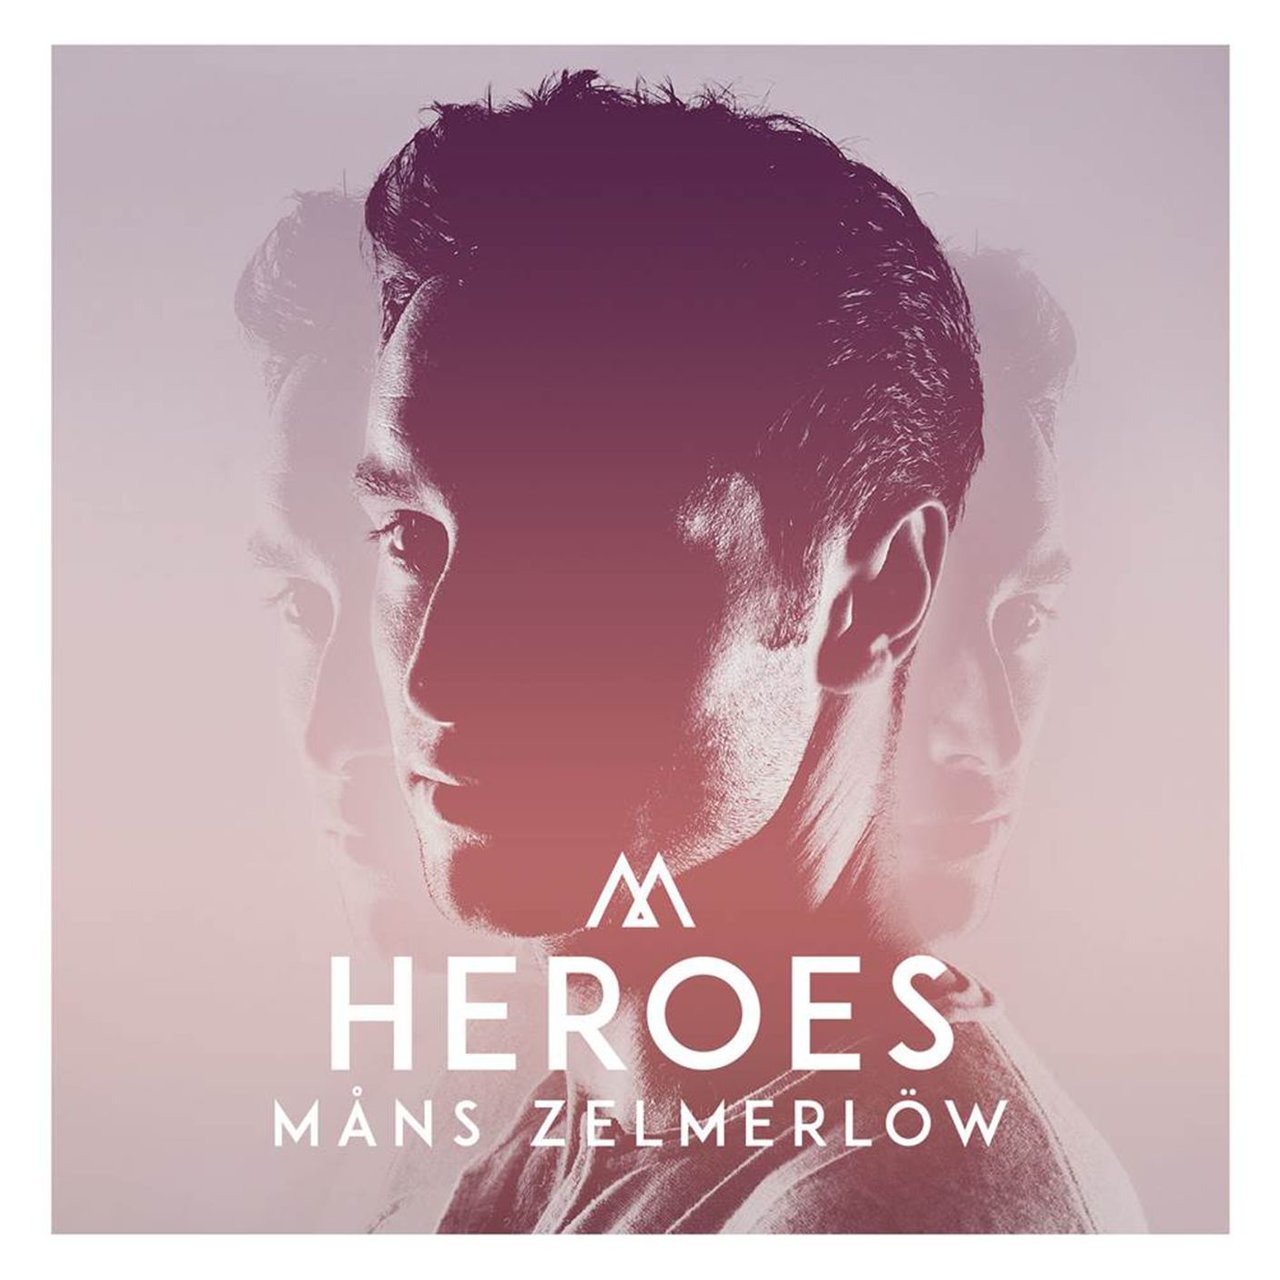 Måns Zelmerlöw — Heroes cover artwork